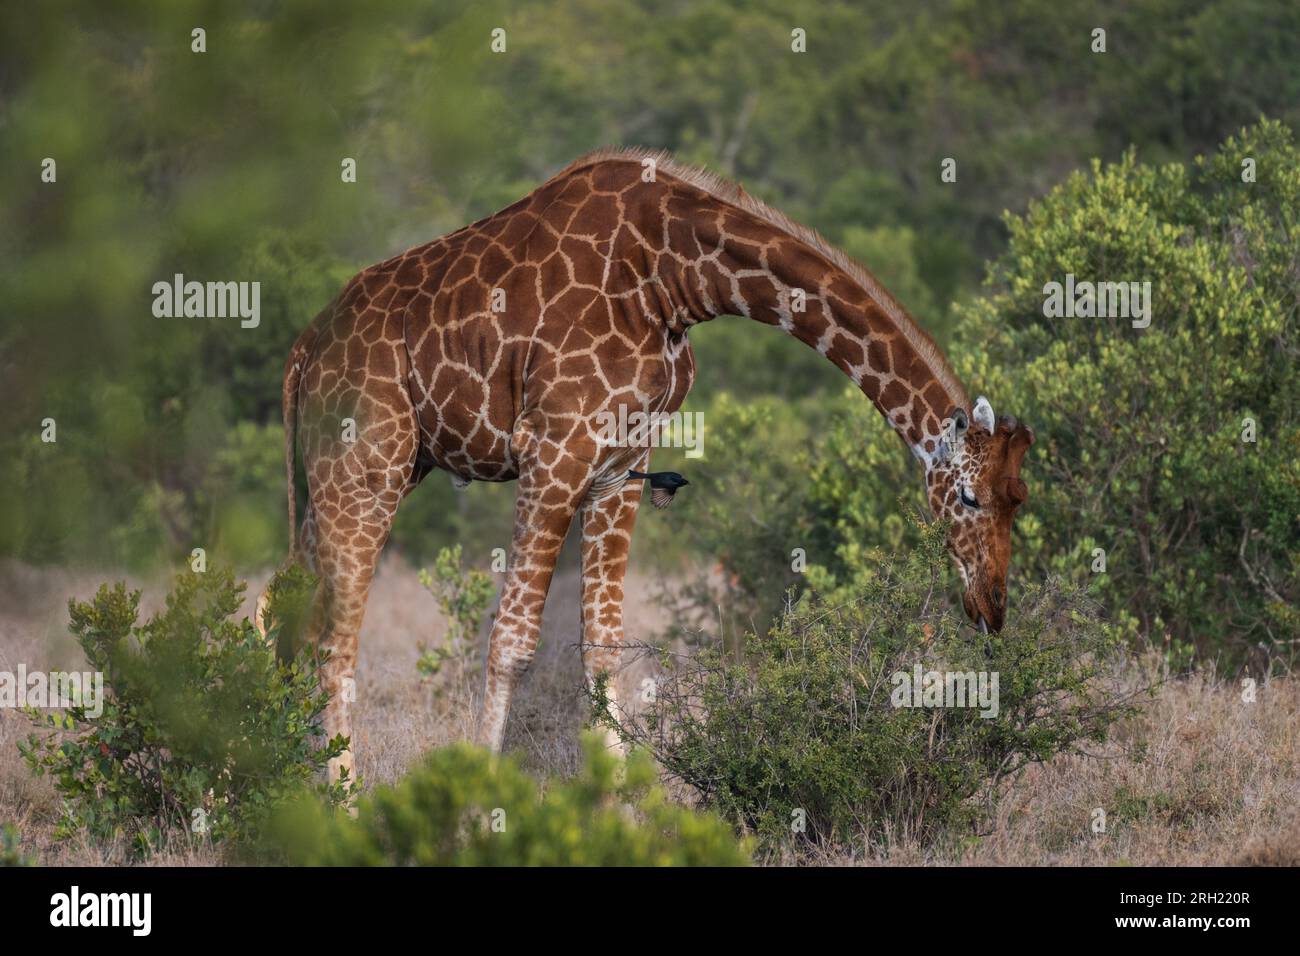 Girafa réticulée, Giraffa camelopardalis reticulata, OL Pejeta Conservancy Area, Kenya, Afrique Banque D'Images